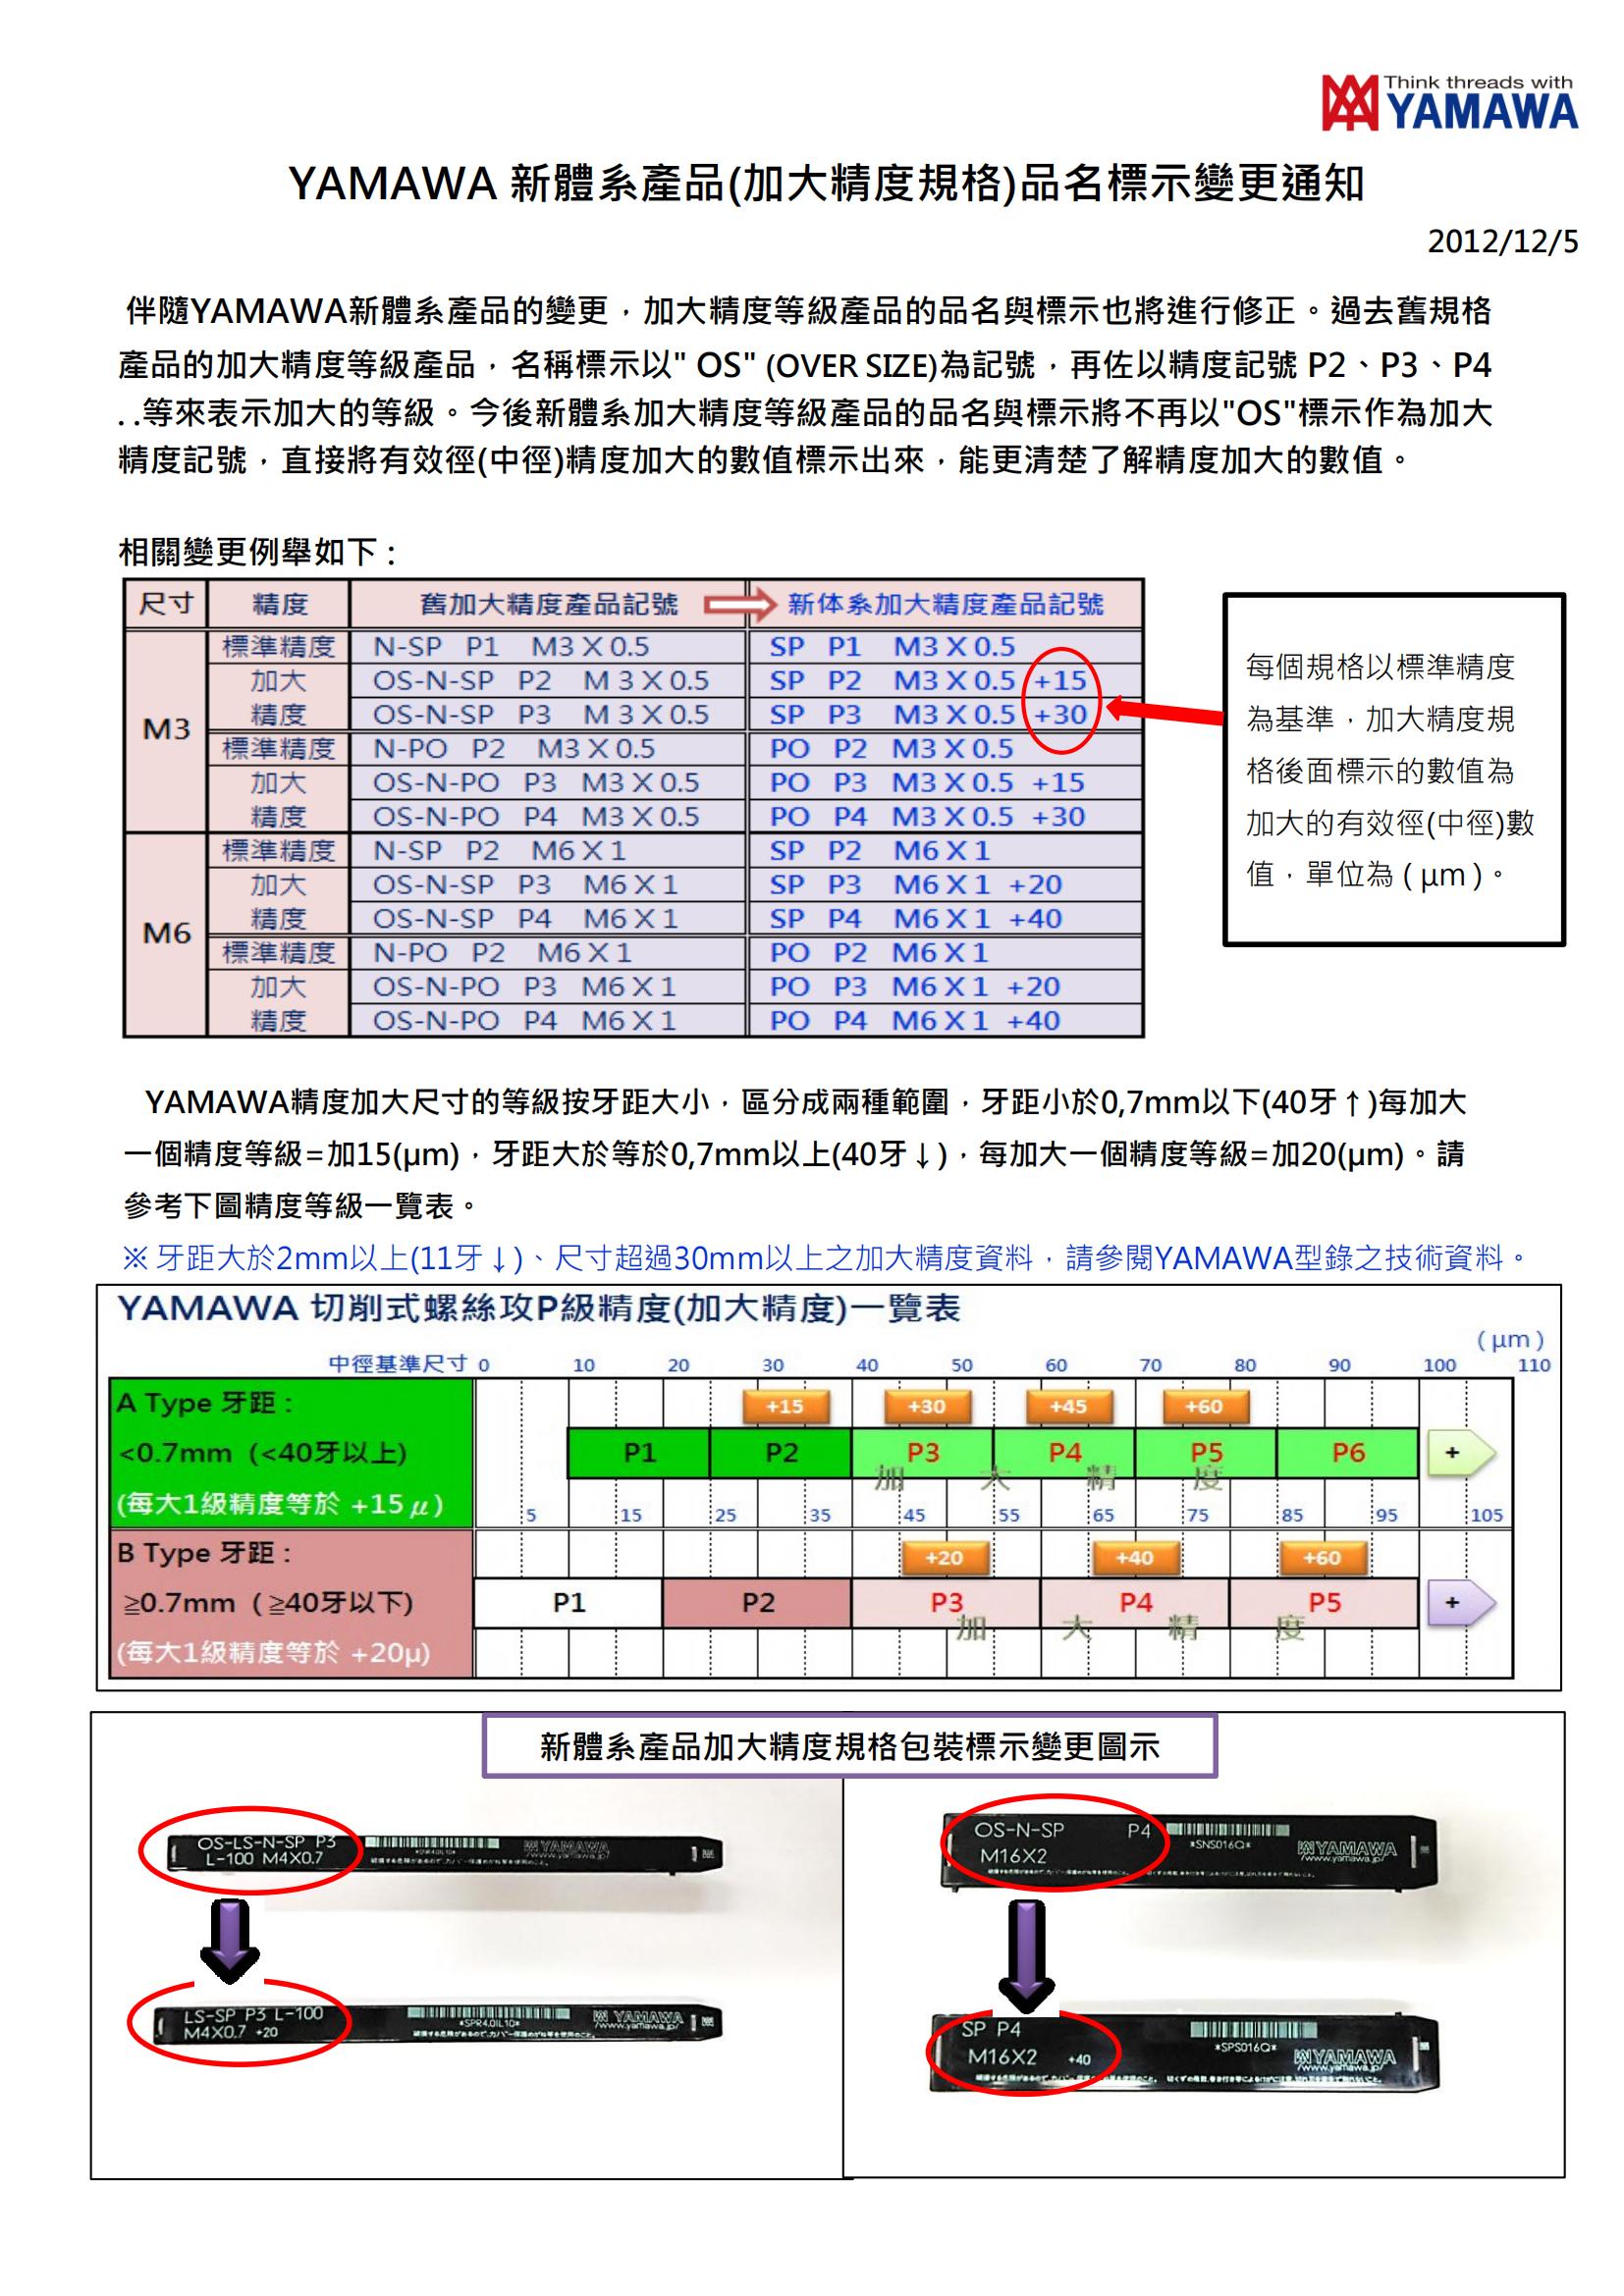 YAMAWA新體系產品(加大精度)絲攻標示變更通知_00.jpg